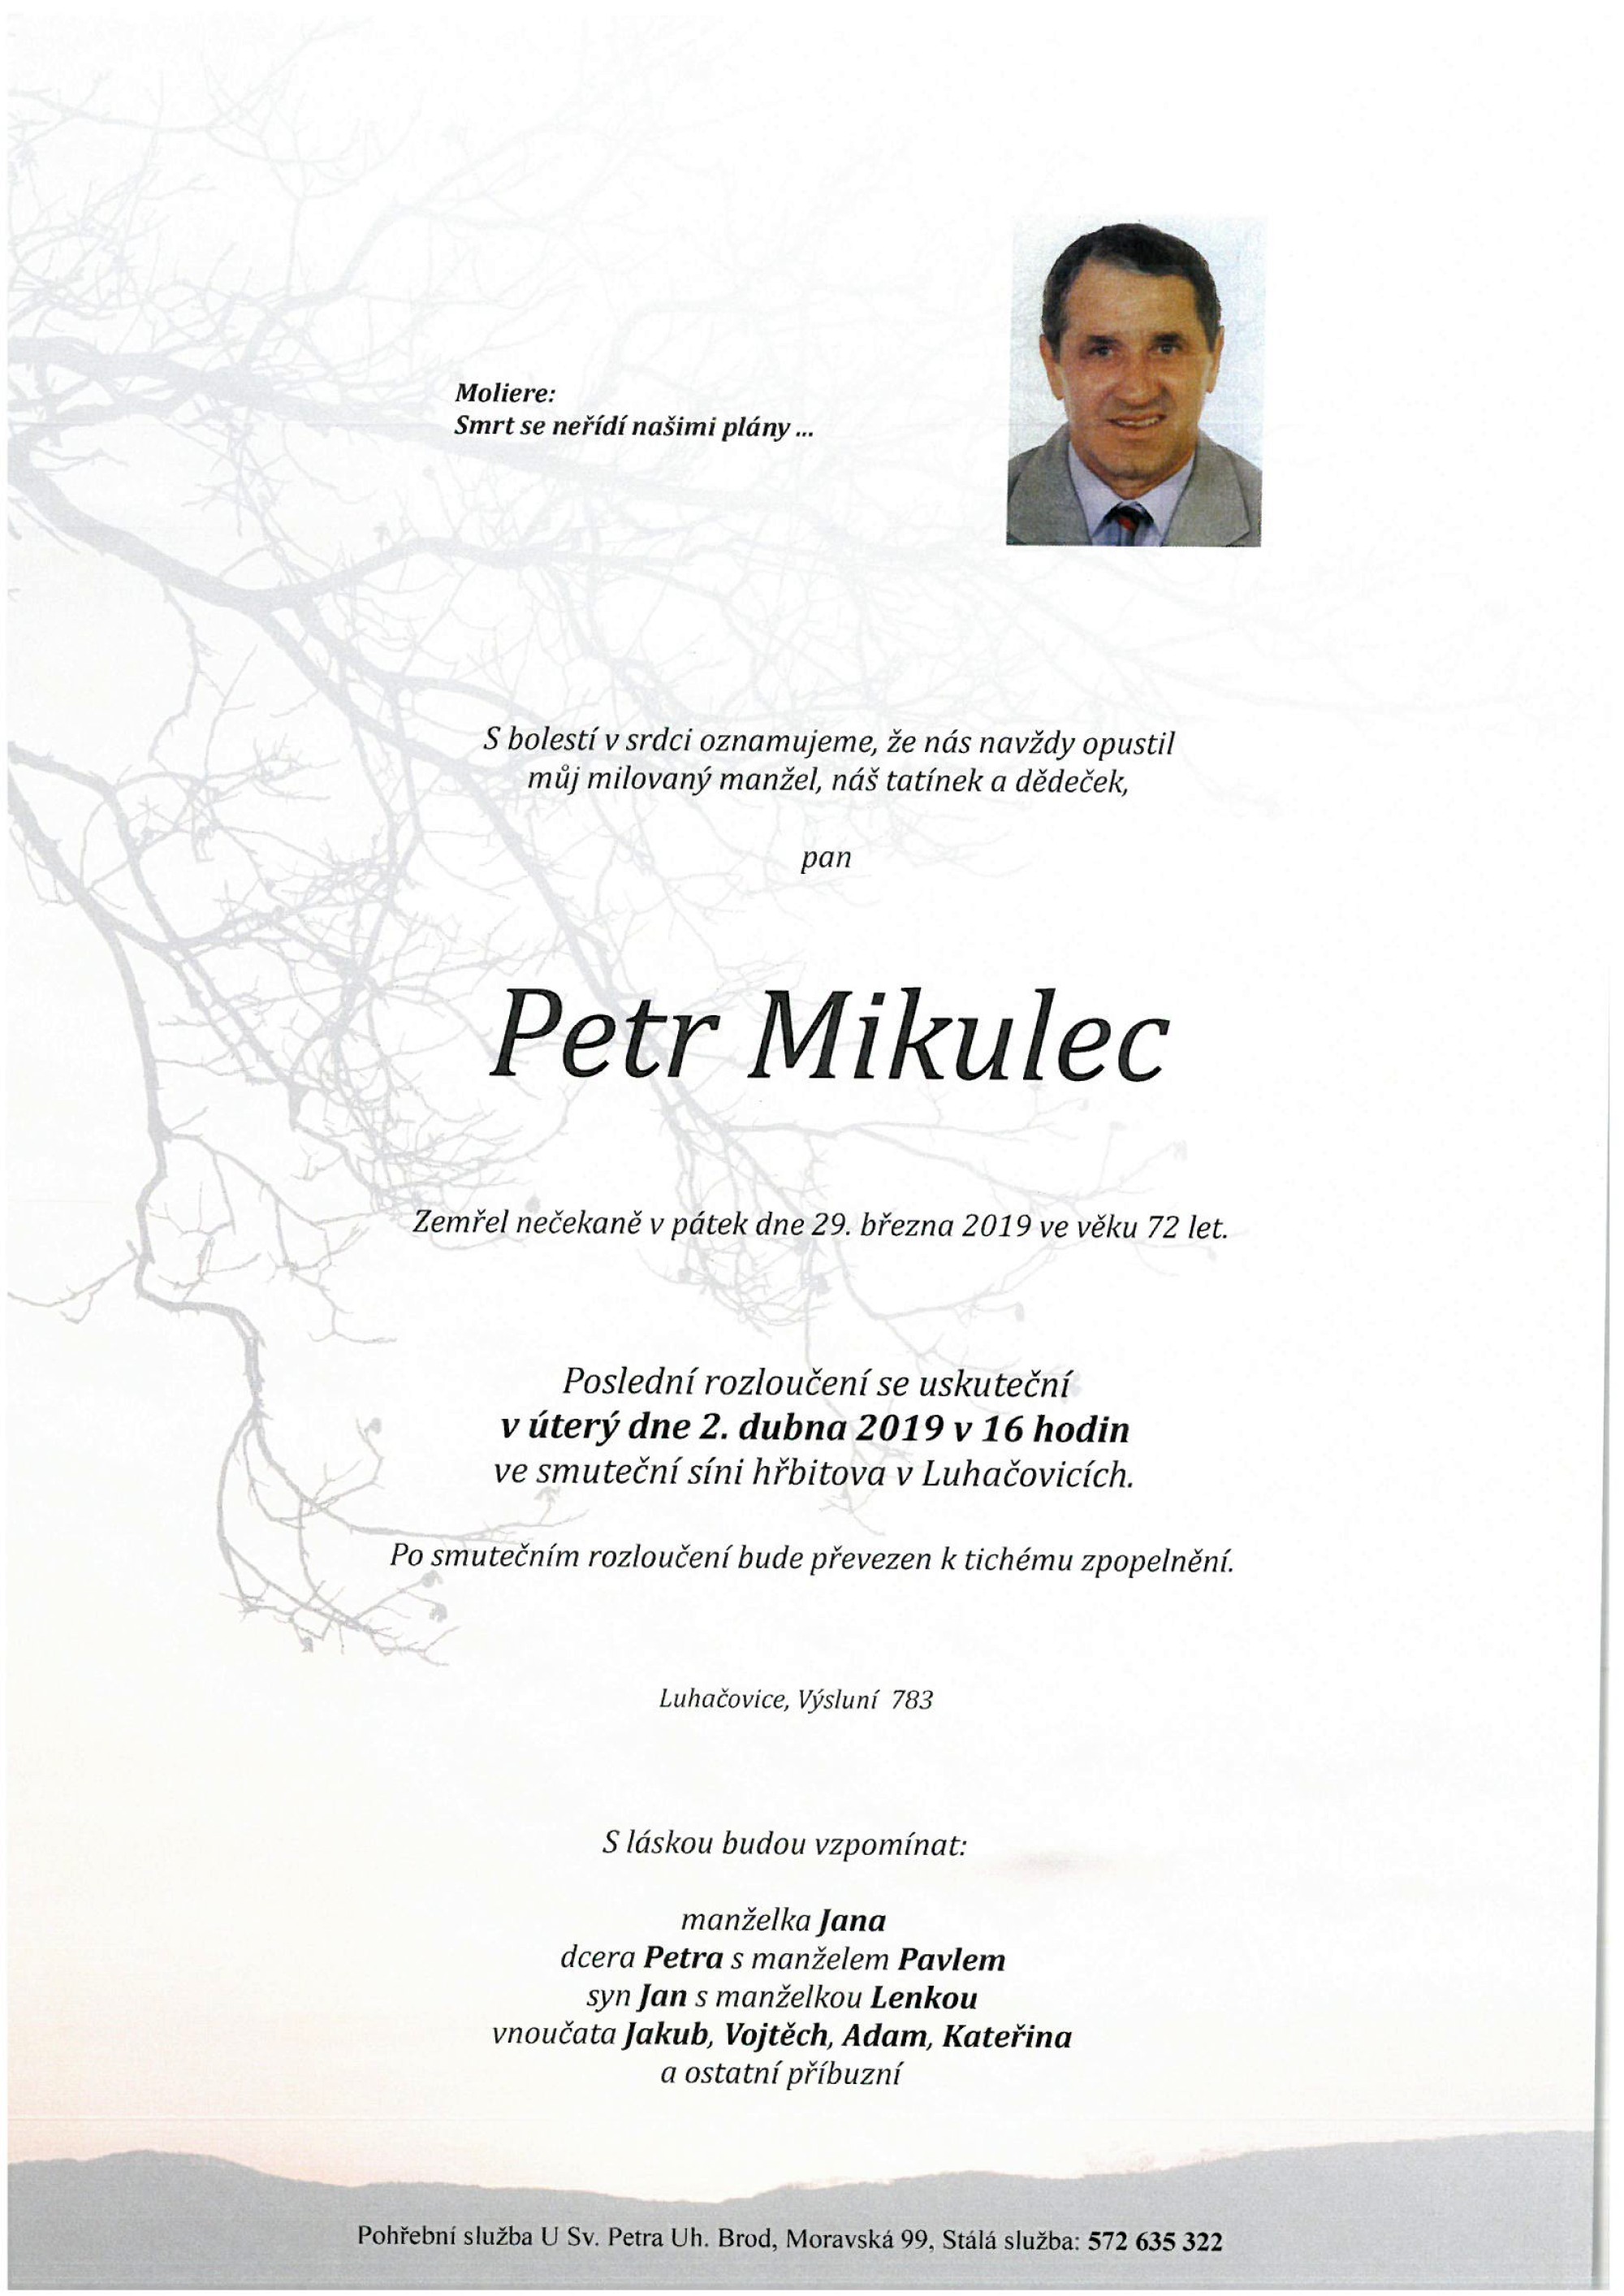 Petr Mikulec